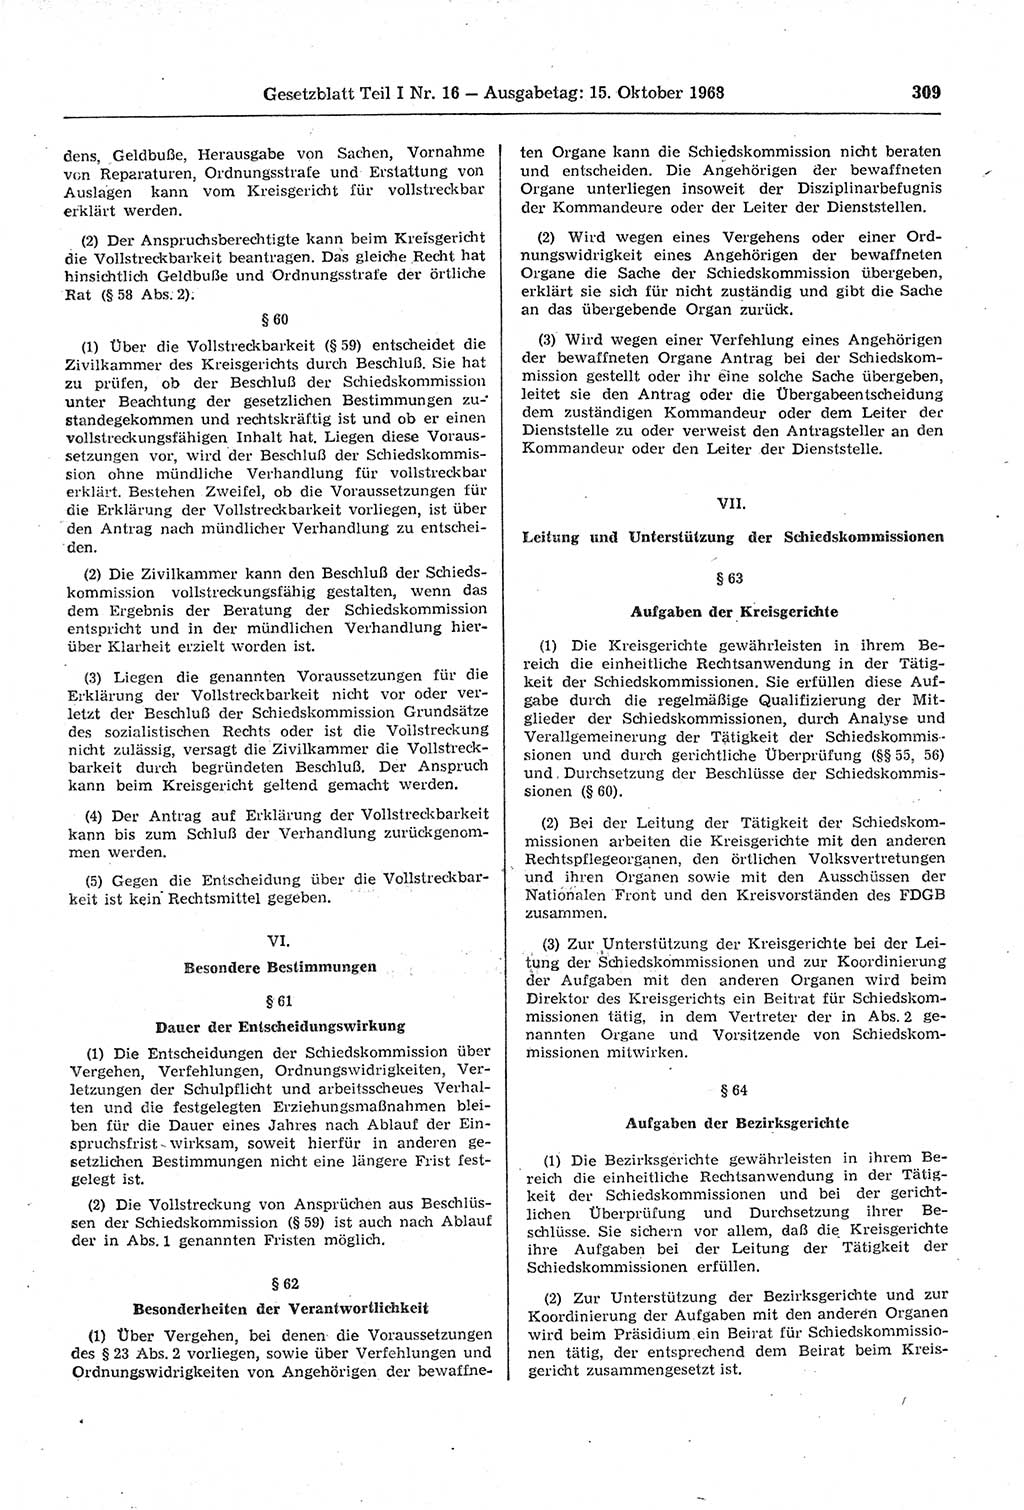 Gesetzblatt (GBl.) der Deutschen Demokratischen Republik (DDR) Teil Ⅰ 1968, Seite 309 (GBl. DDR Ⅰ 1968, S. 309)